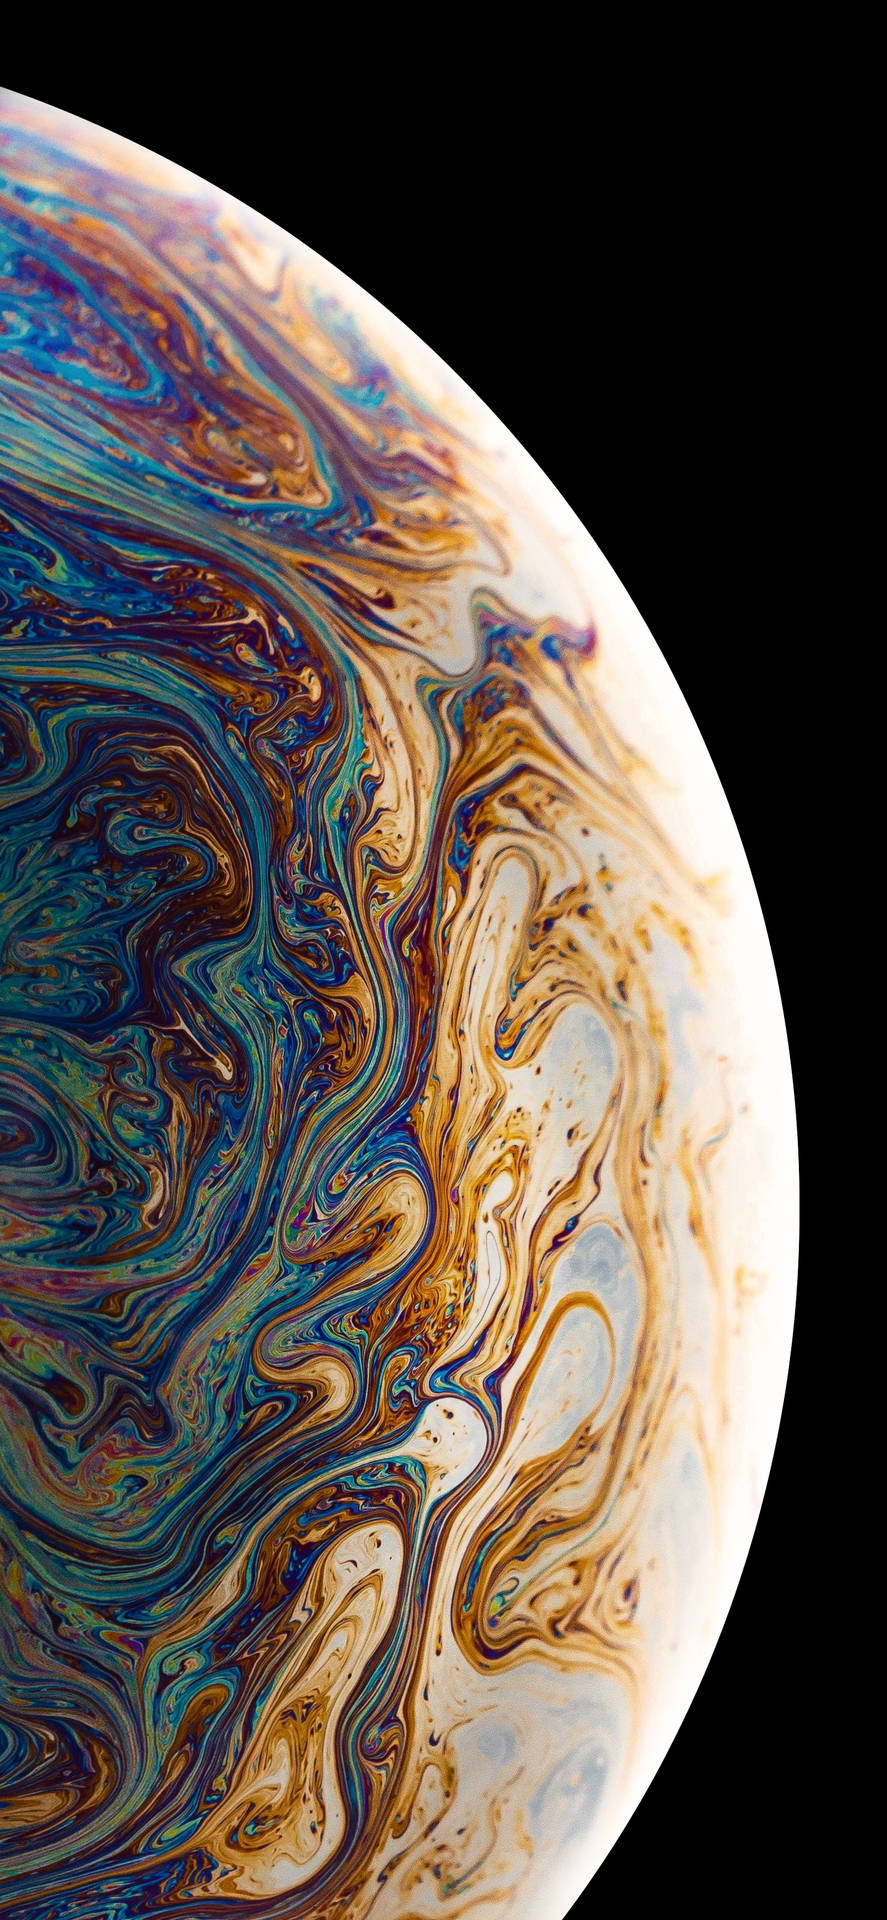 Với bộ sưu tập hình nền Planet Swirls đầy màu sắc và nghệ thuật cho iOS 11, người dùng sẽ được cung cấp những tác phẩm thú vị và độc đáo. Những hình ảnh Hoàng Gia cùng những dải màu sắc điêu khắc sẽ làm cho màn hình iPhone 11 của bạn trở nên sống động và độc đáo hơn. 